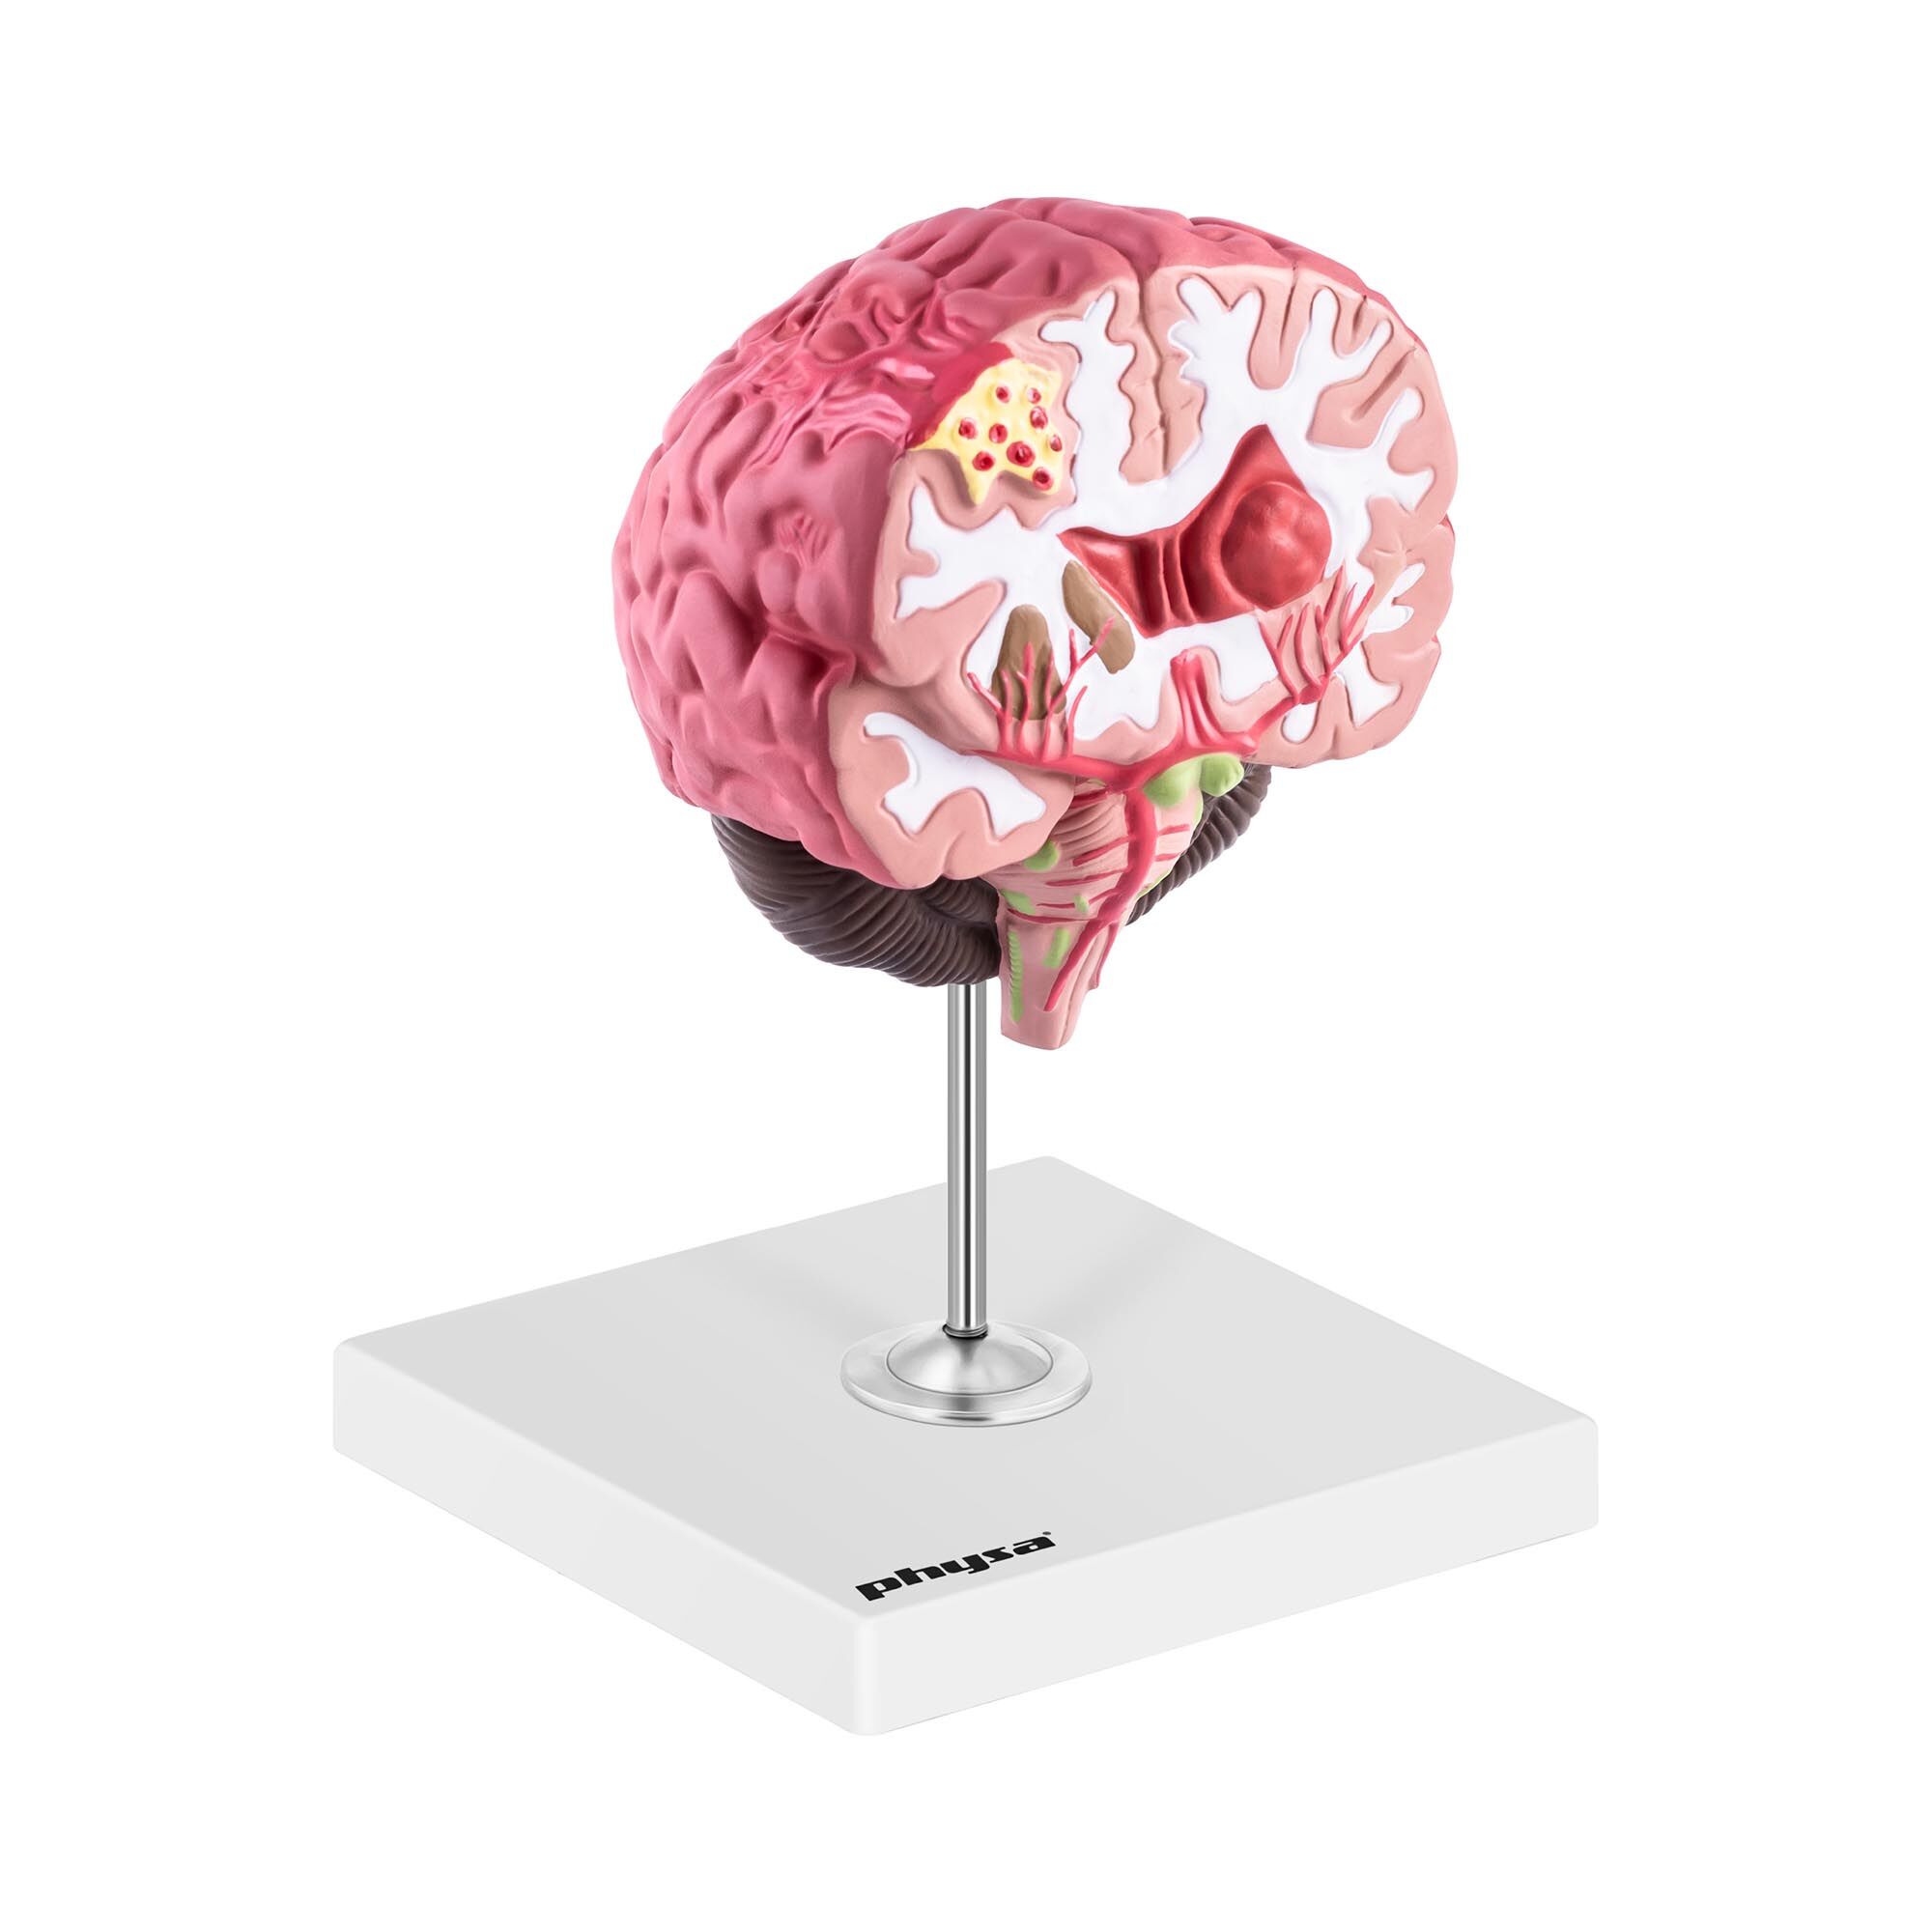 physa Gehirn Modell - pathologisch - koloriert